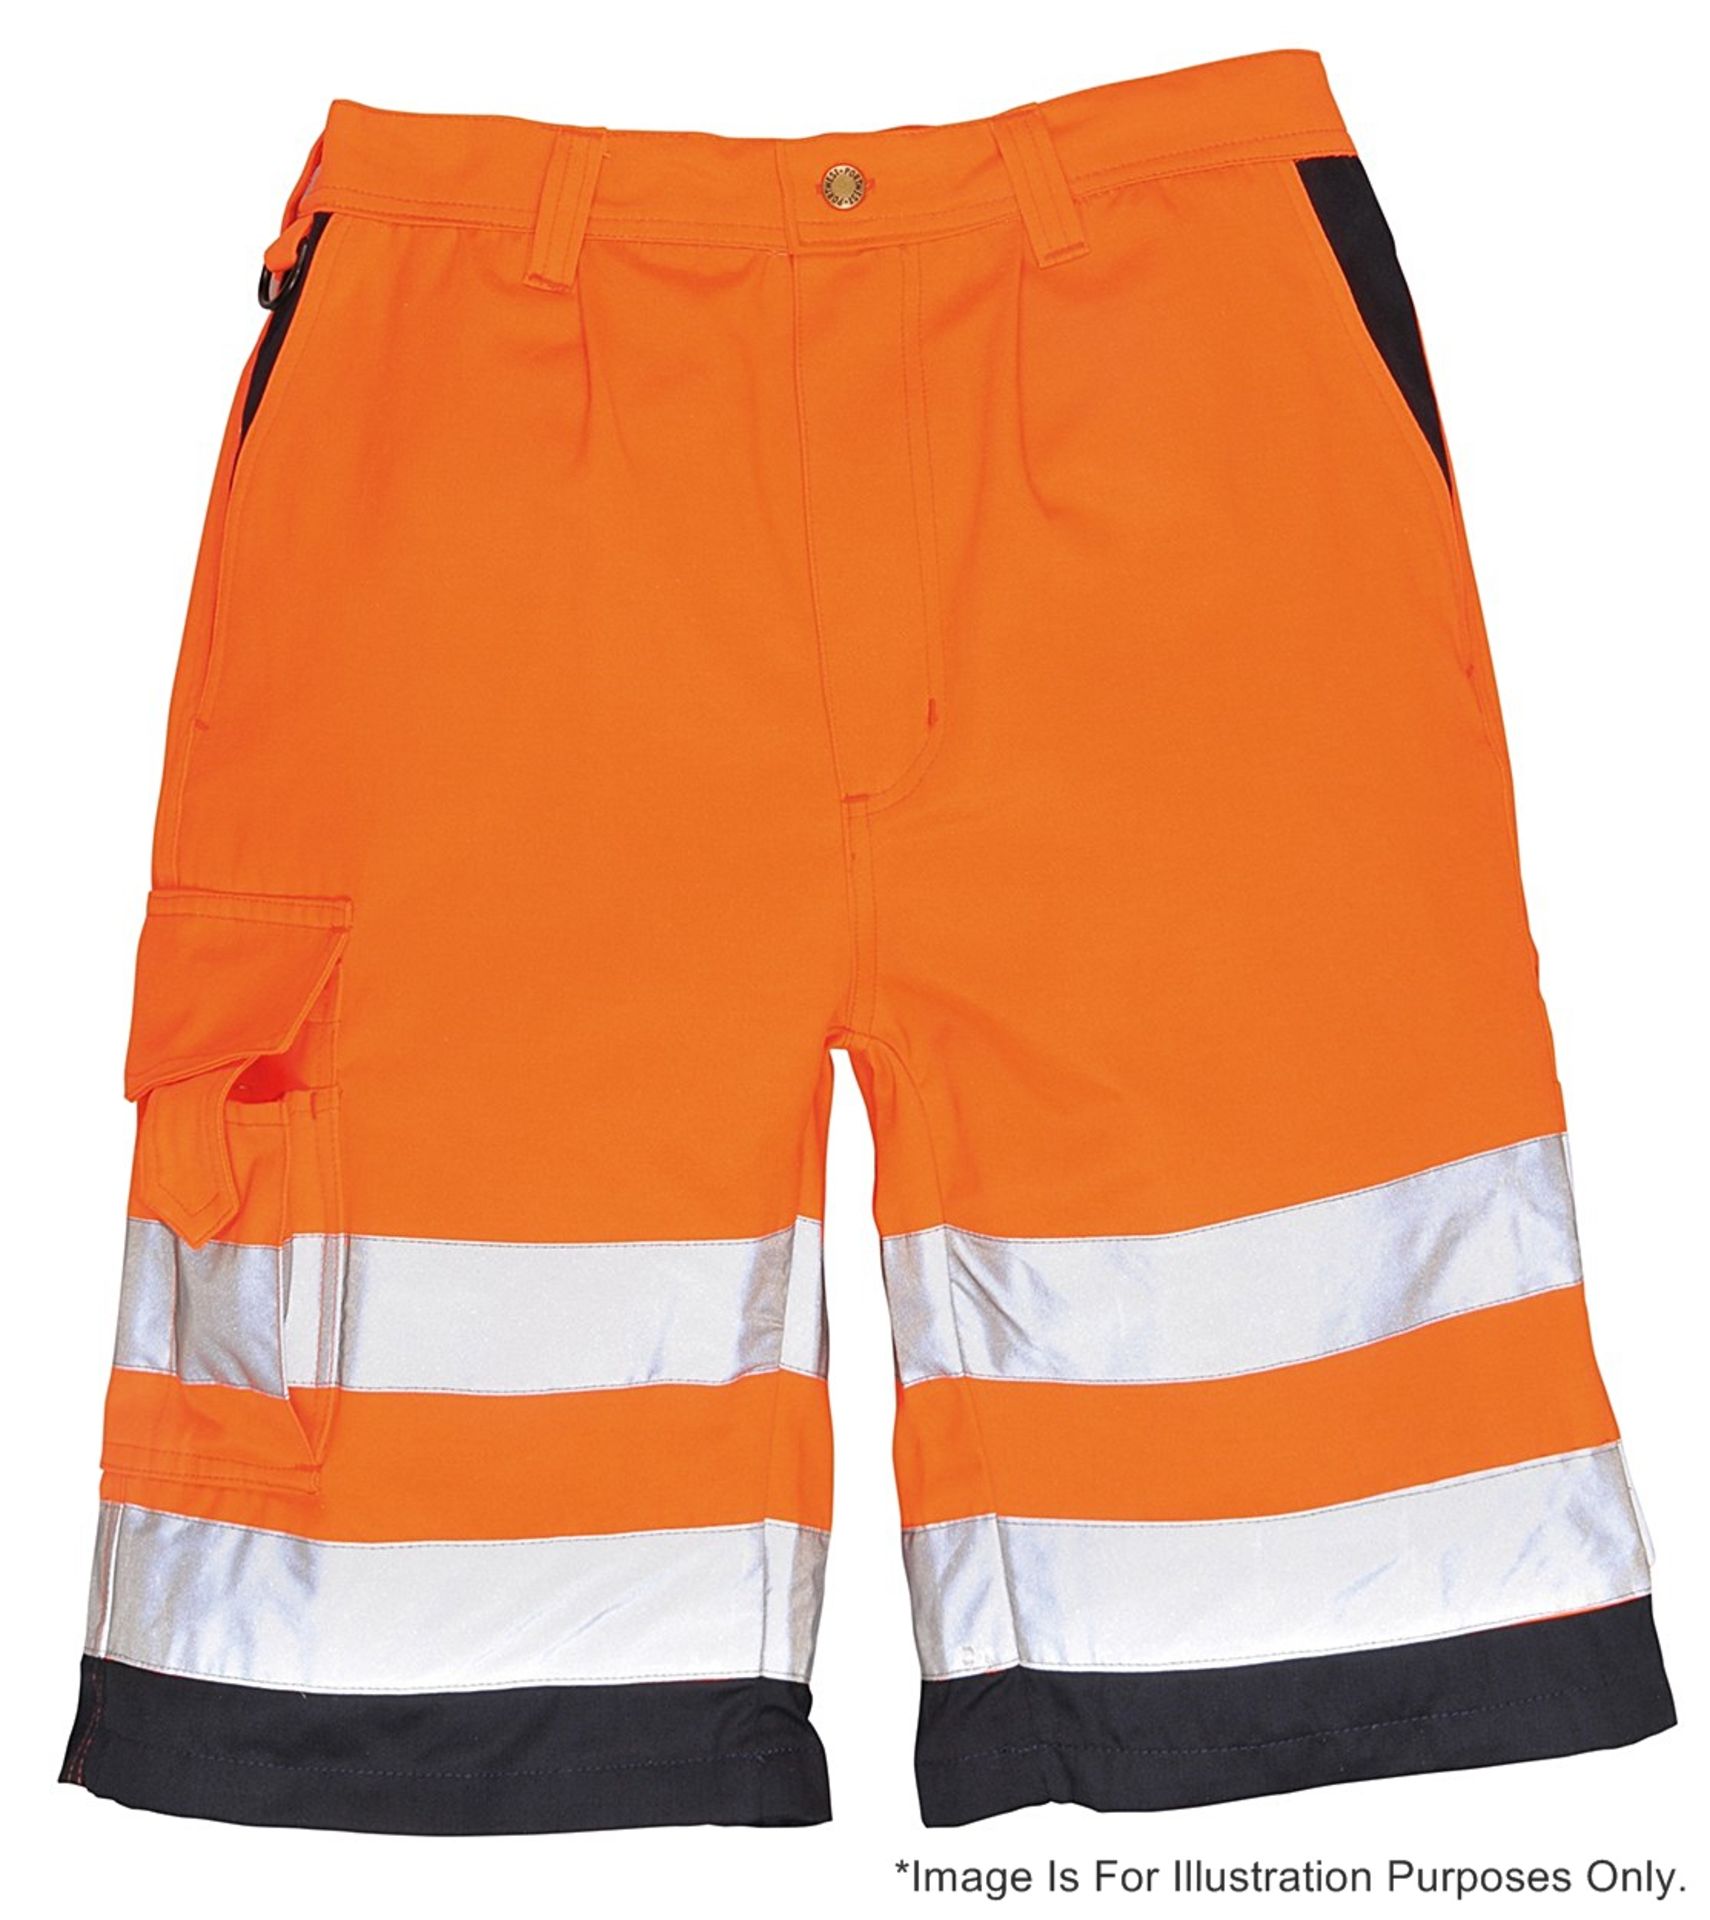 1 x Pair Of Portwest E043 Hi-Vis Poly-cotton Work Shorts - Colour: Orange - Size: Large - New/Unused